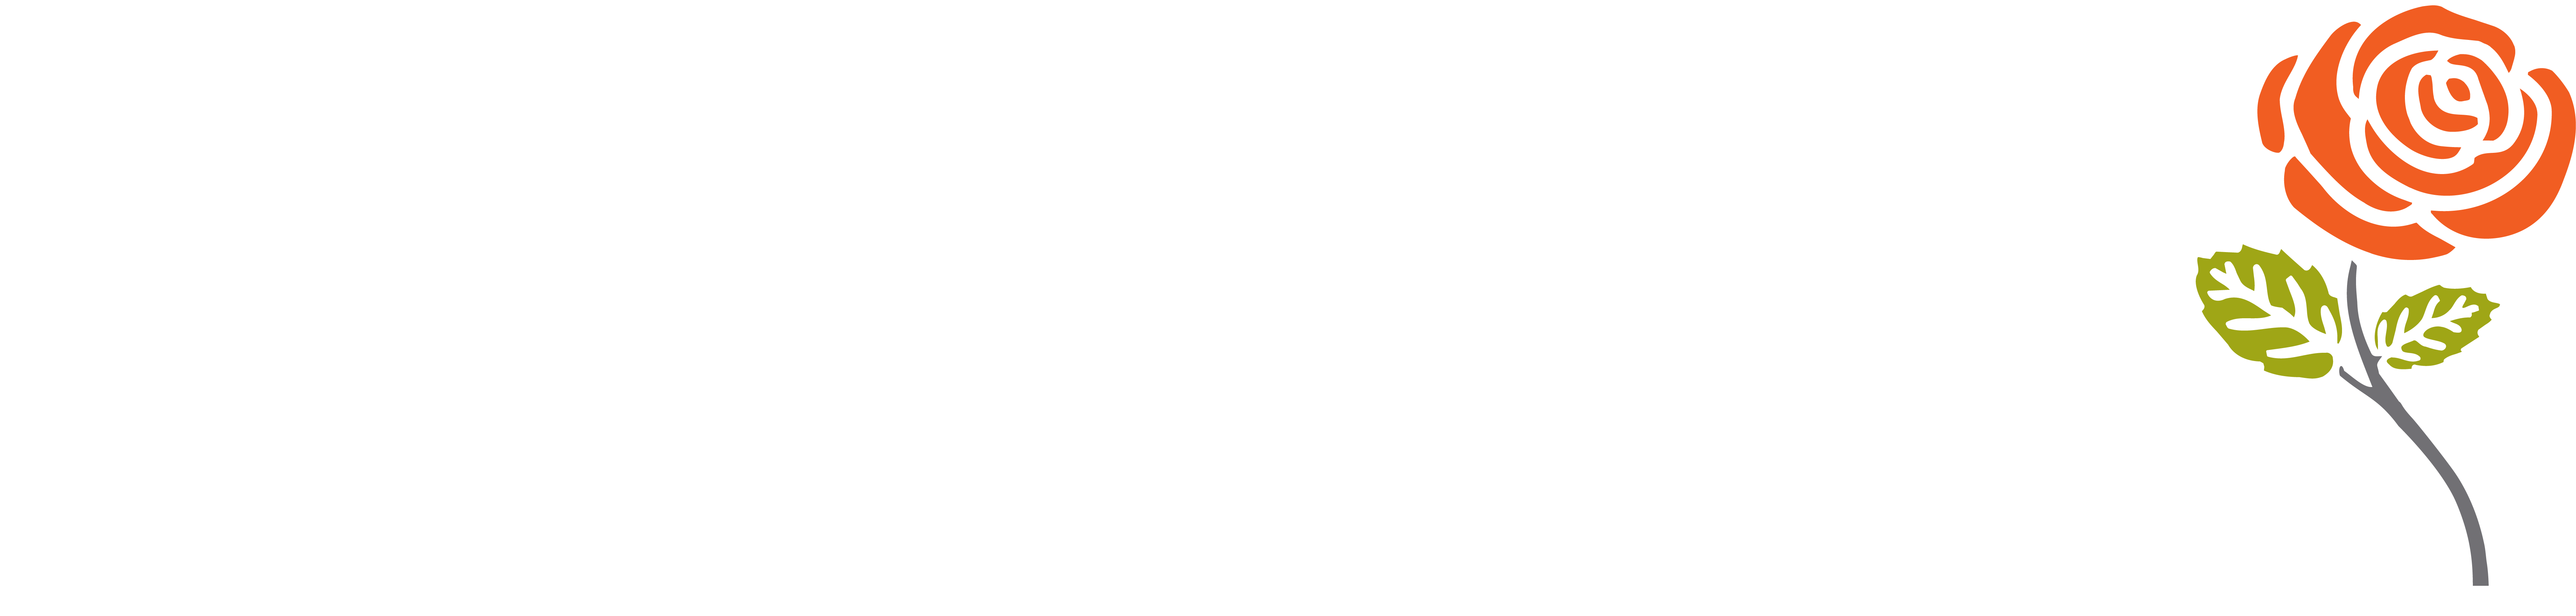 rosebank-logo